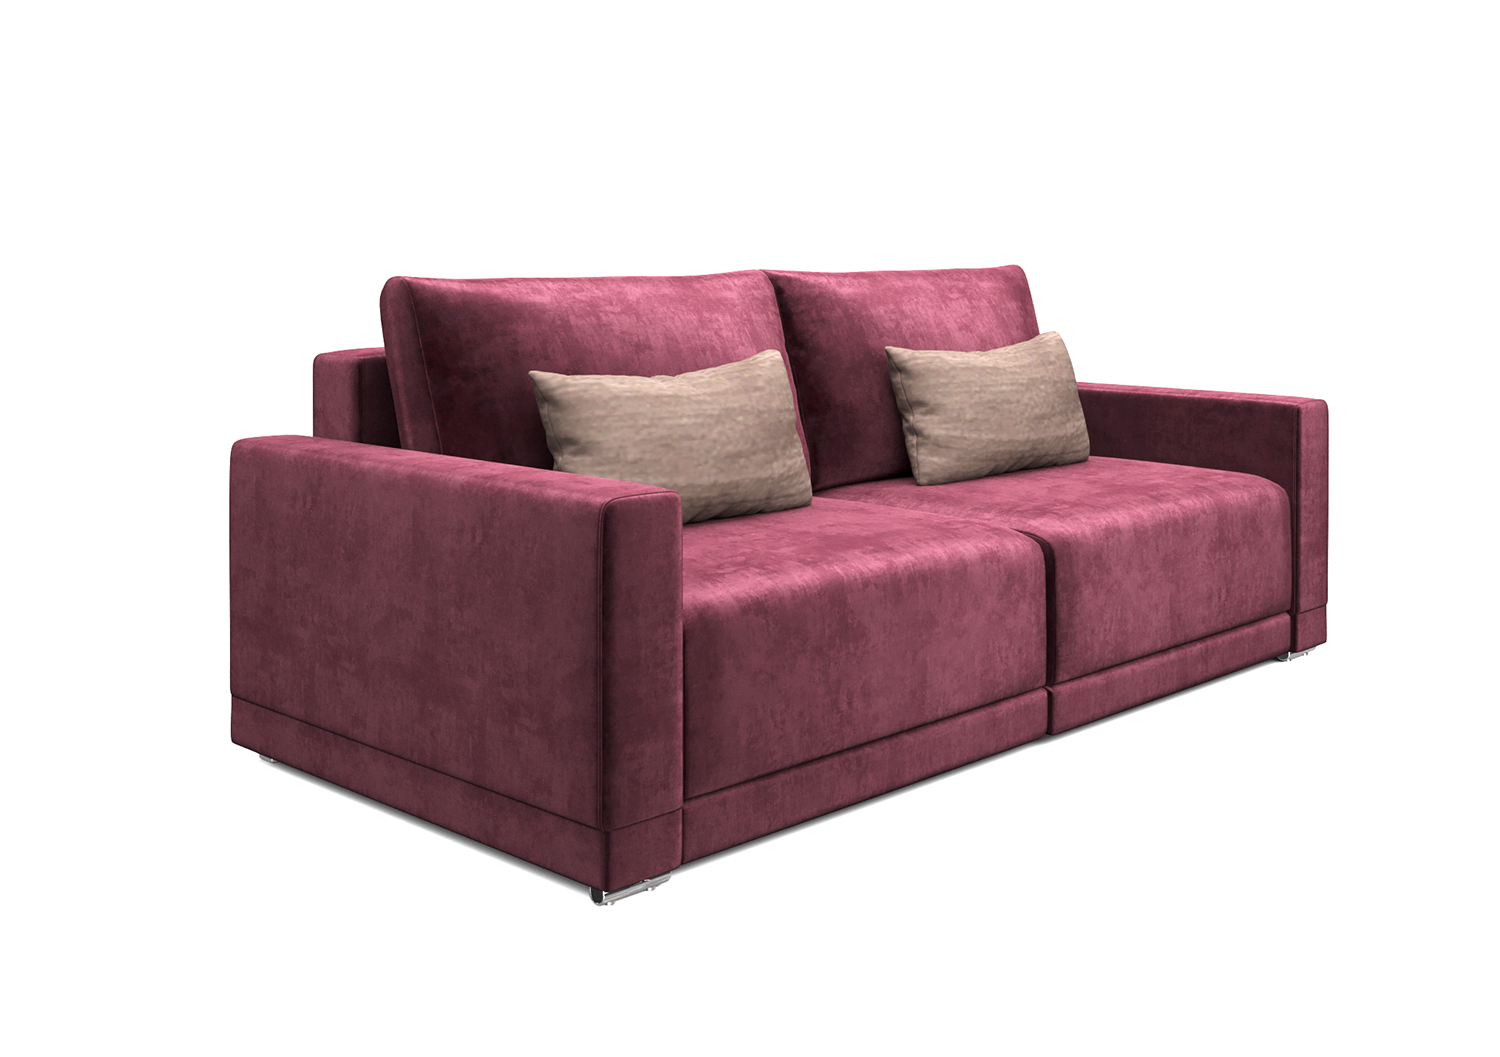 Мартин, прямой диван, Marseille burgundy ткань Шенилл цвет Бордовый механизм трансформации Еврокнижка